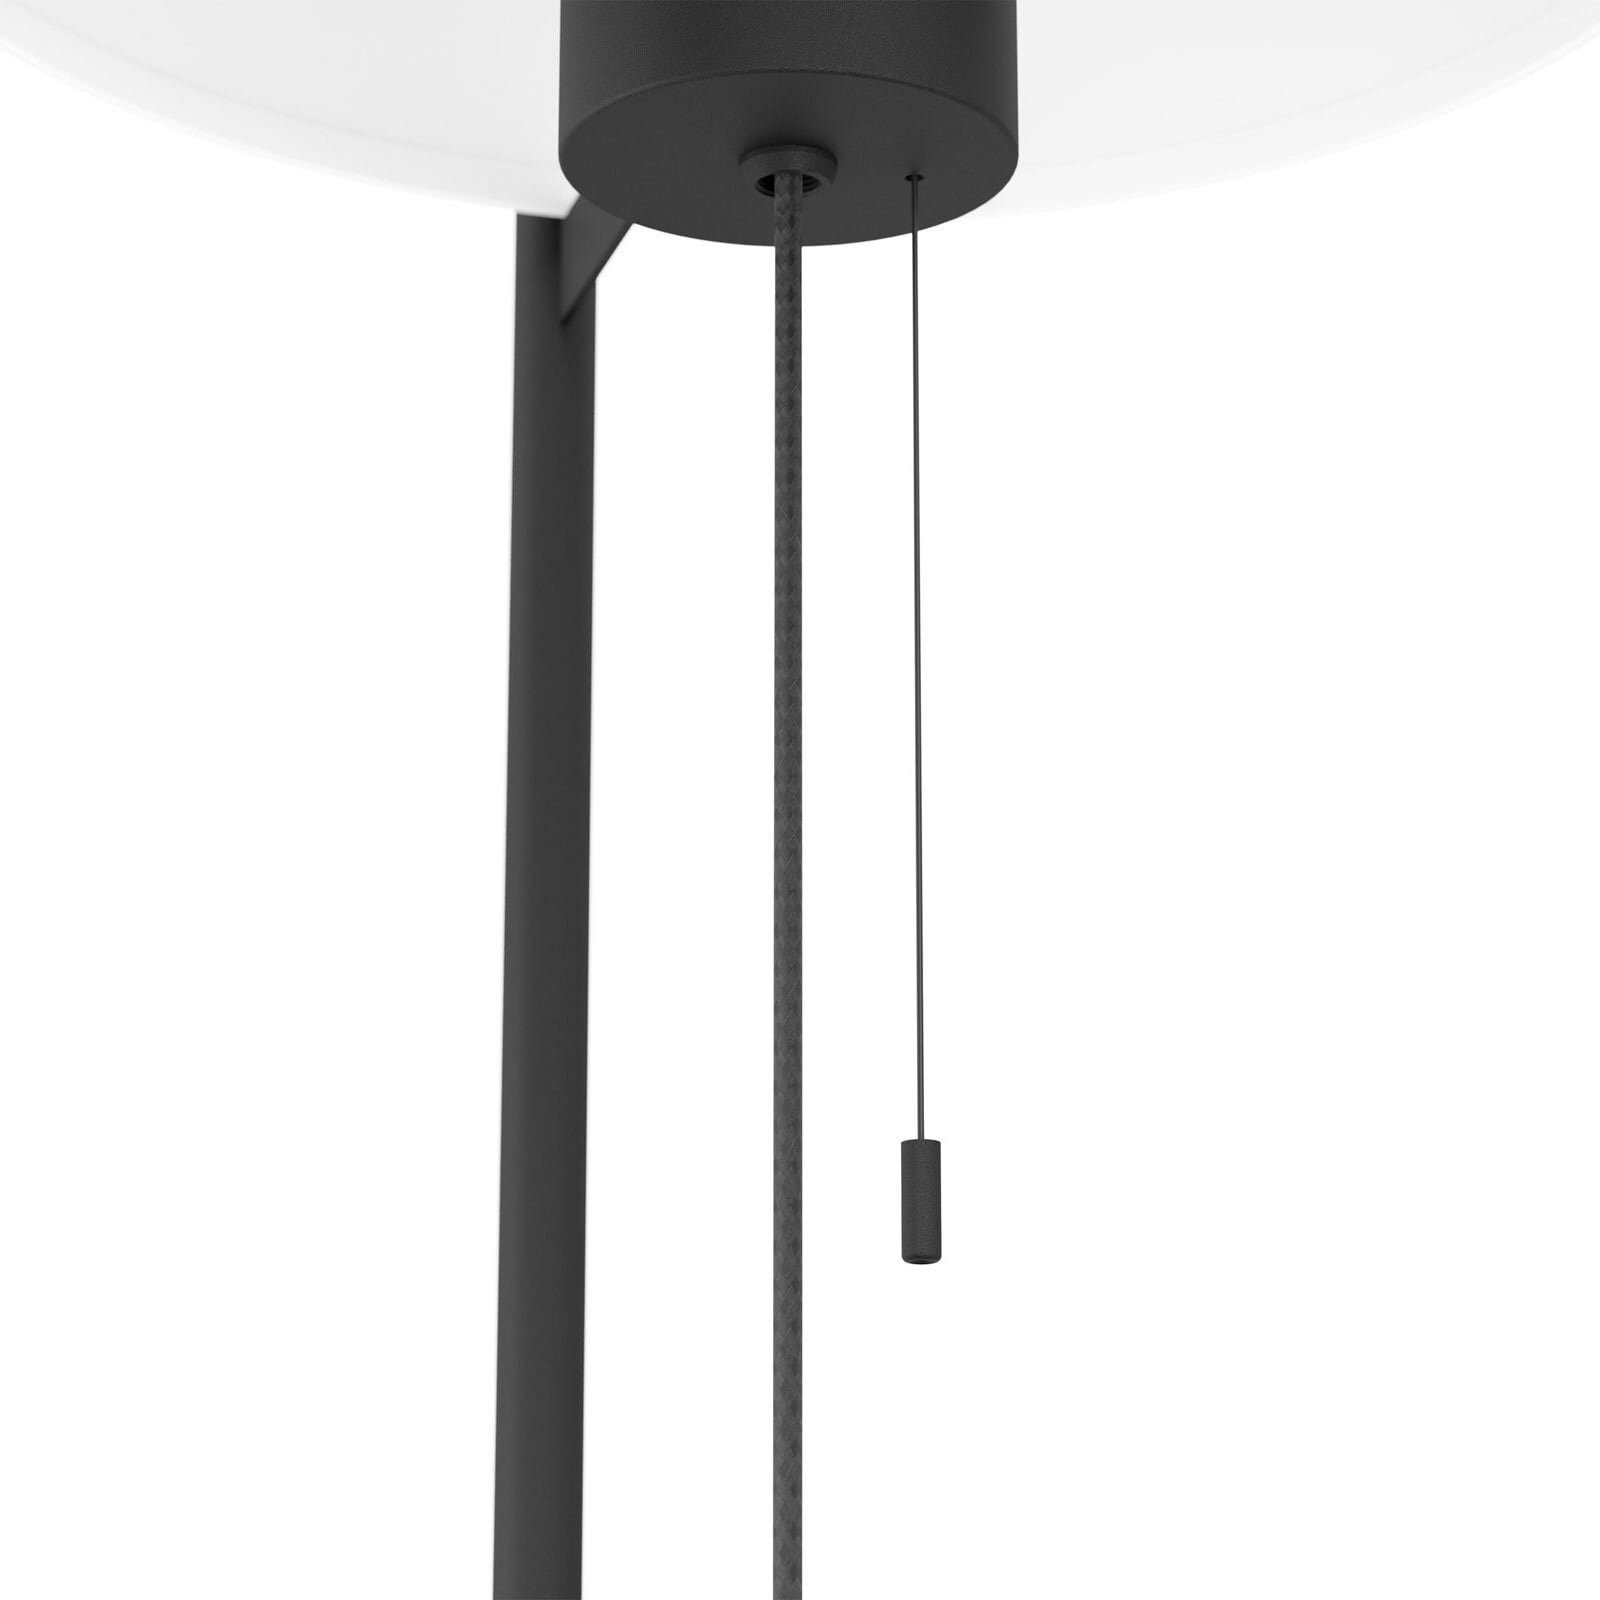 JOOP! Retrofit Stehlampe ROUND-LIGHTS BLACK schwarz /weiß